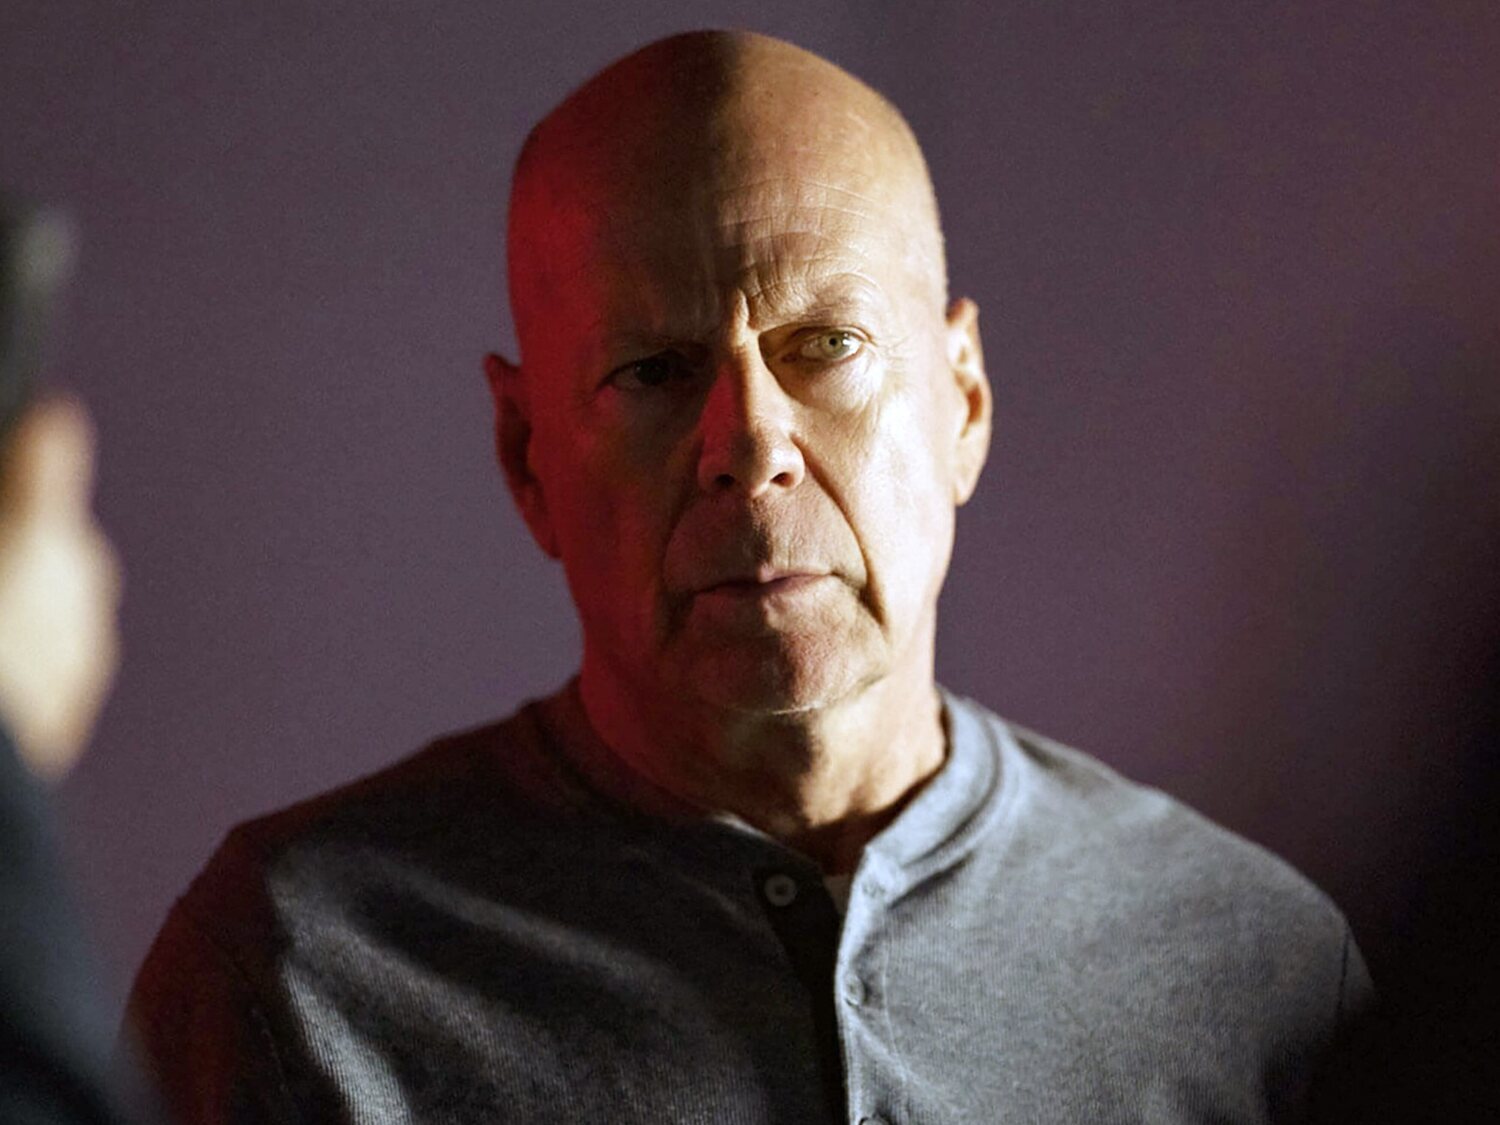 La enfermedad de Bruce Willis: es incapaz de comunicarse y ha perdido la alegría de vivir